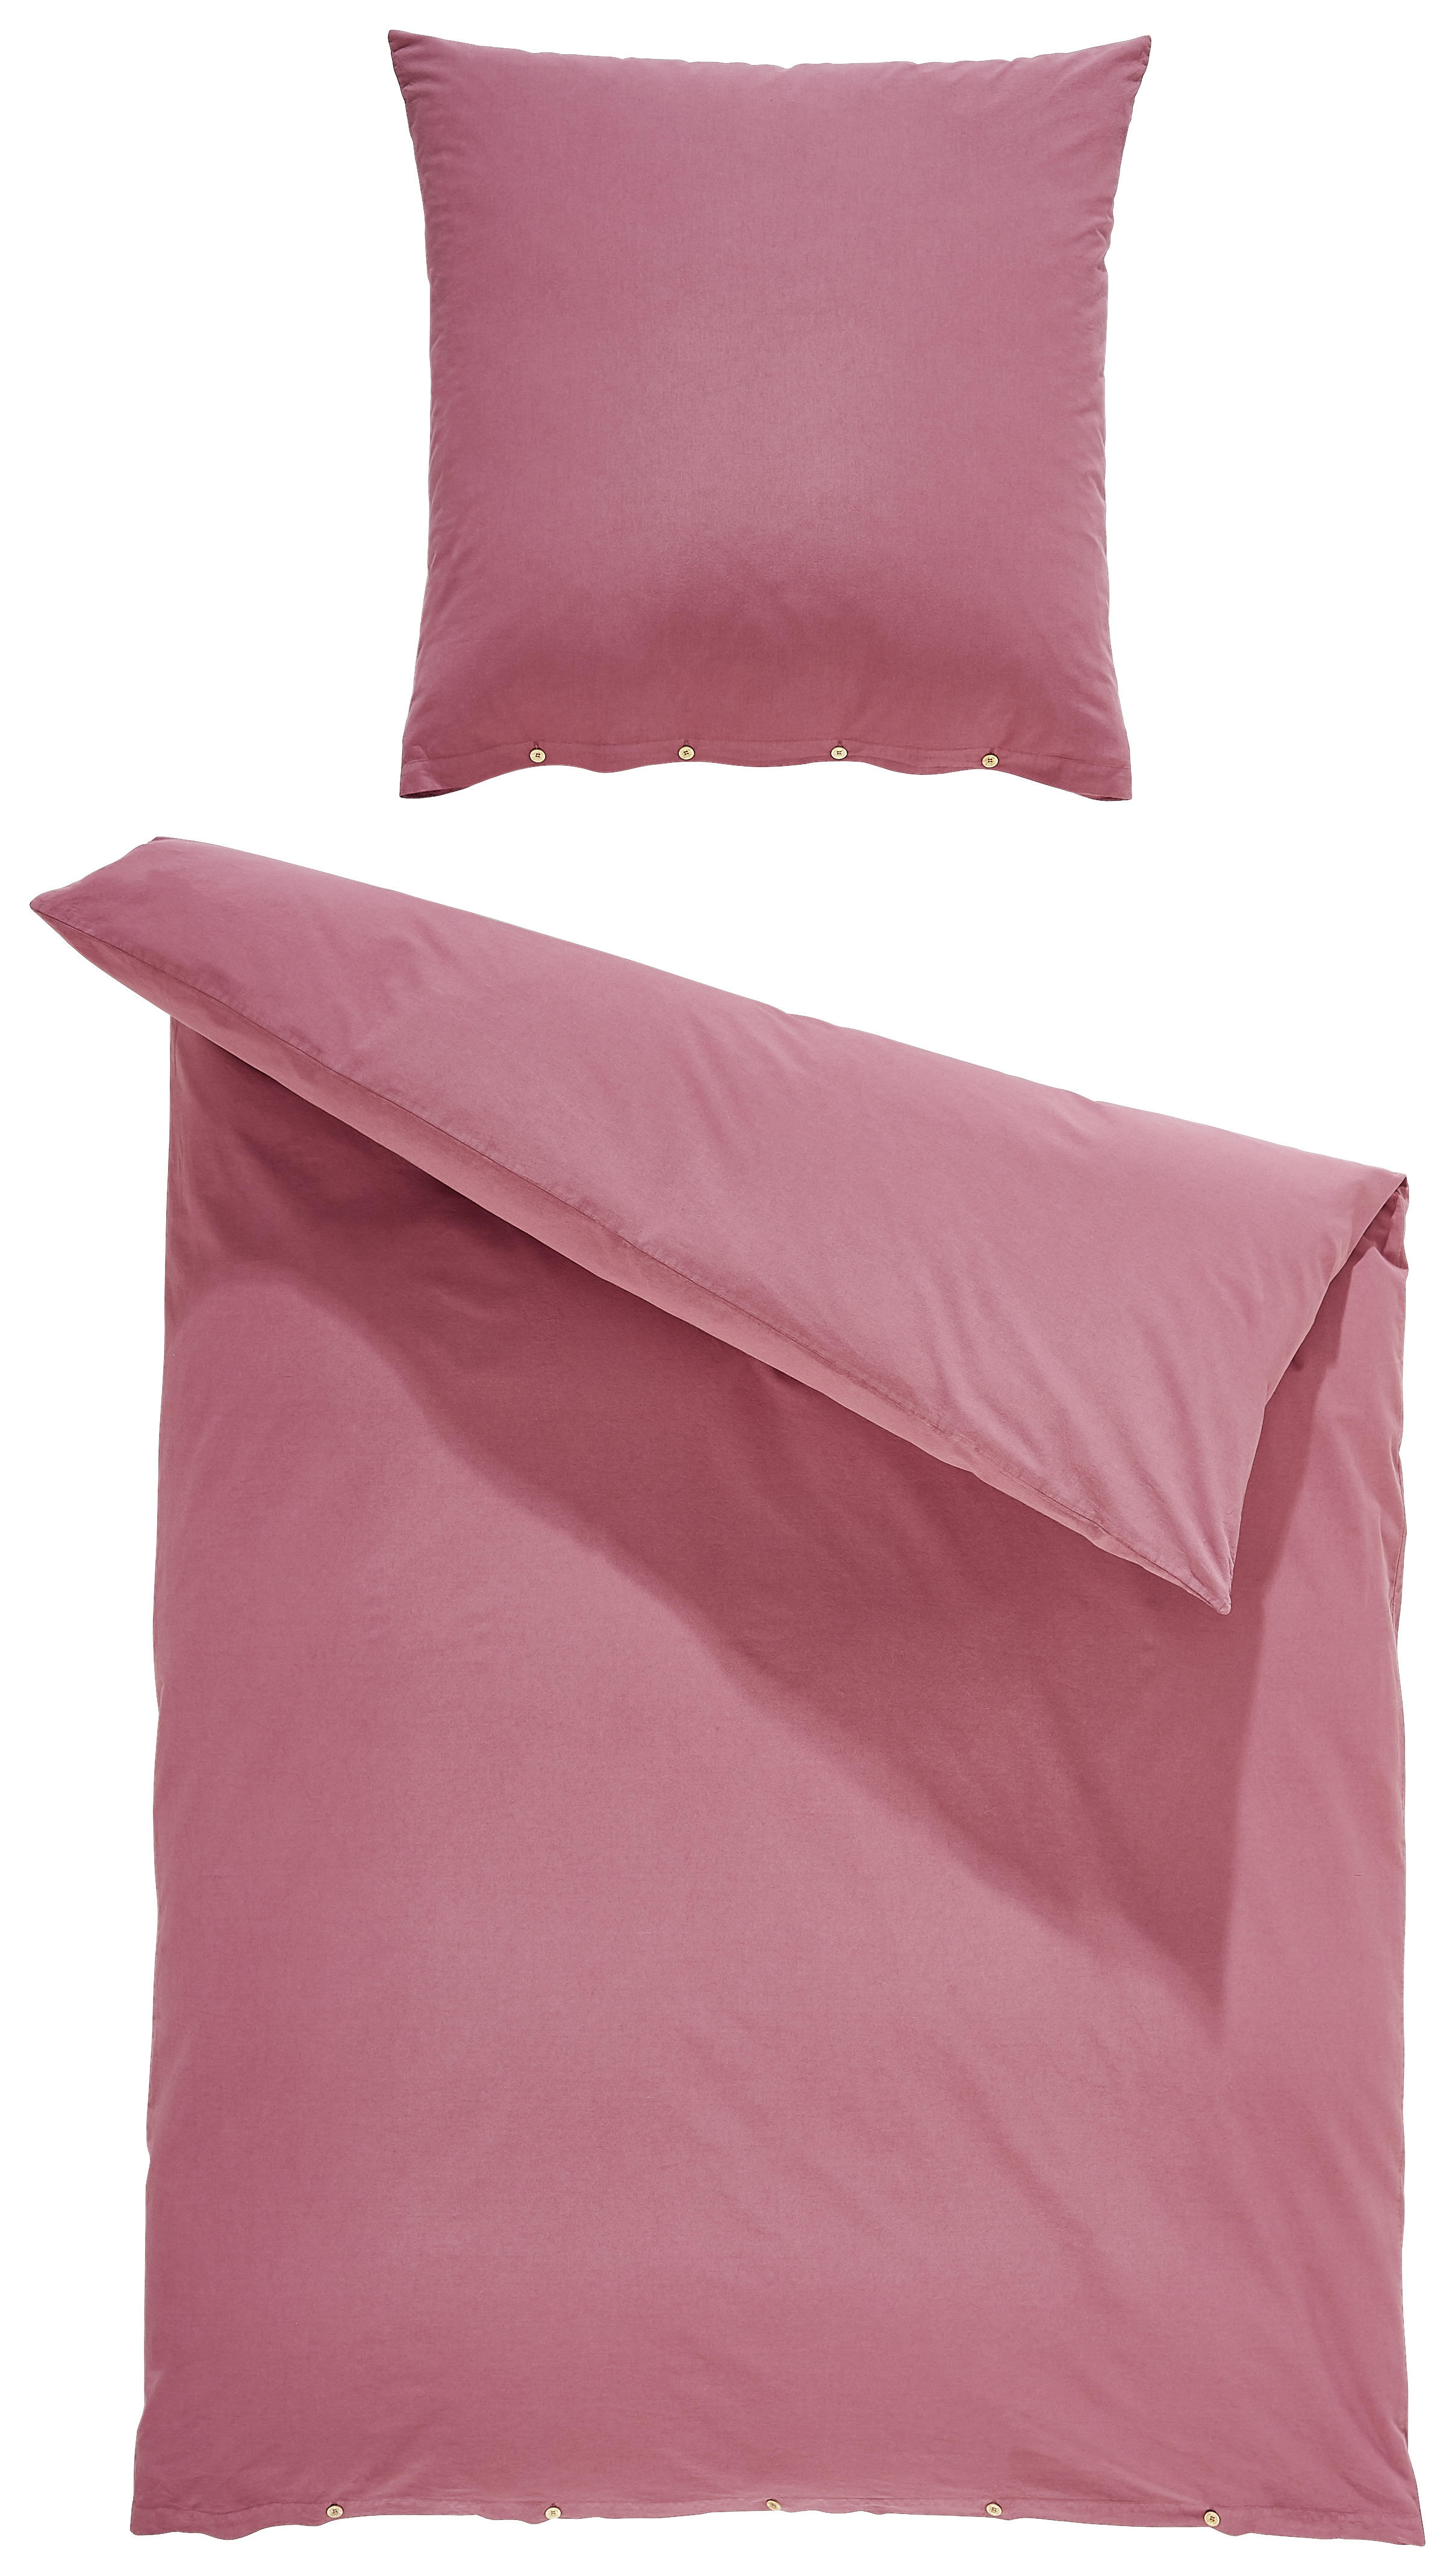 BETTWÄSCHE Renforcé  - Pink, KONVENTIONELL, Textil (155/220cm) - Bio:Vio